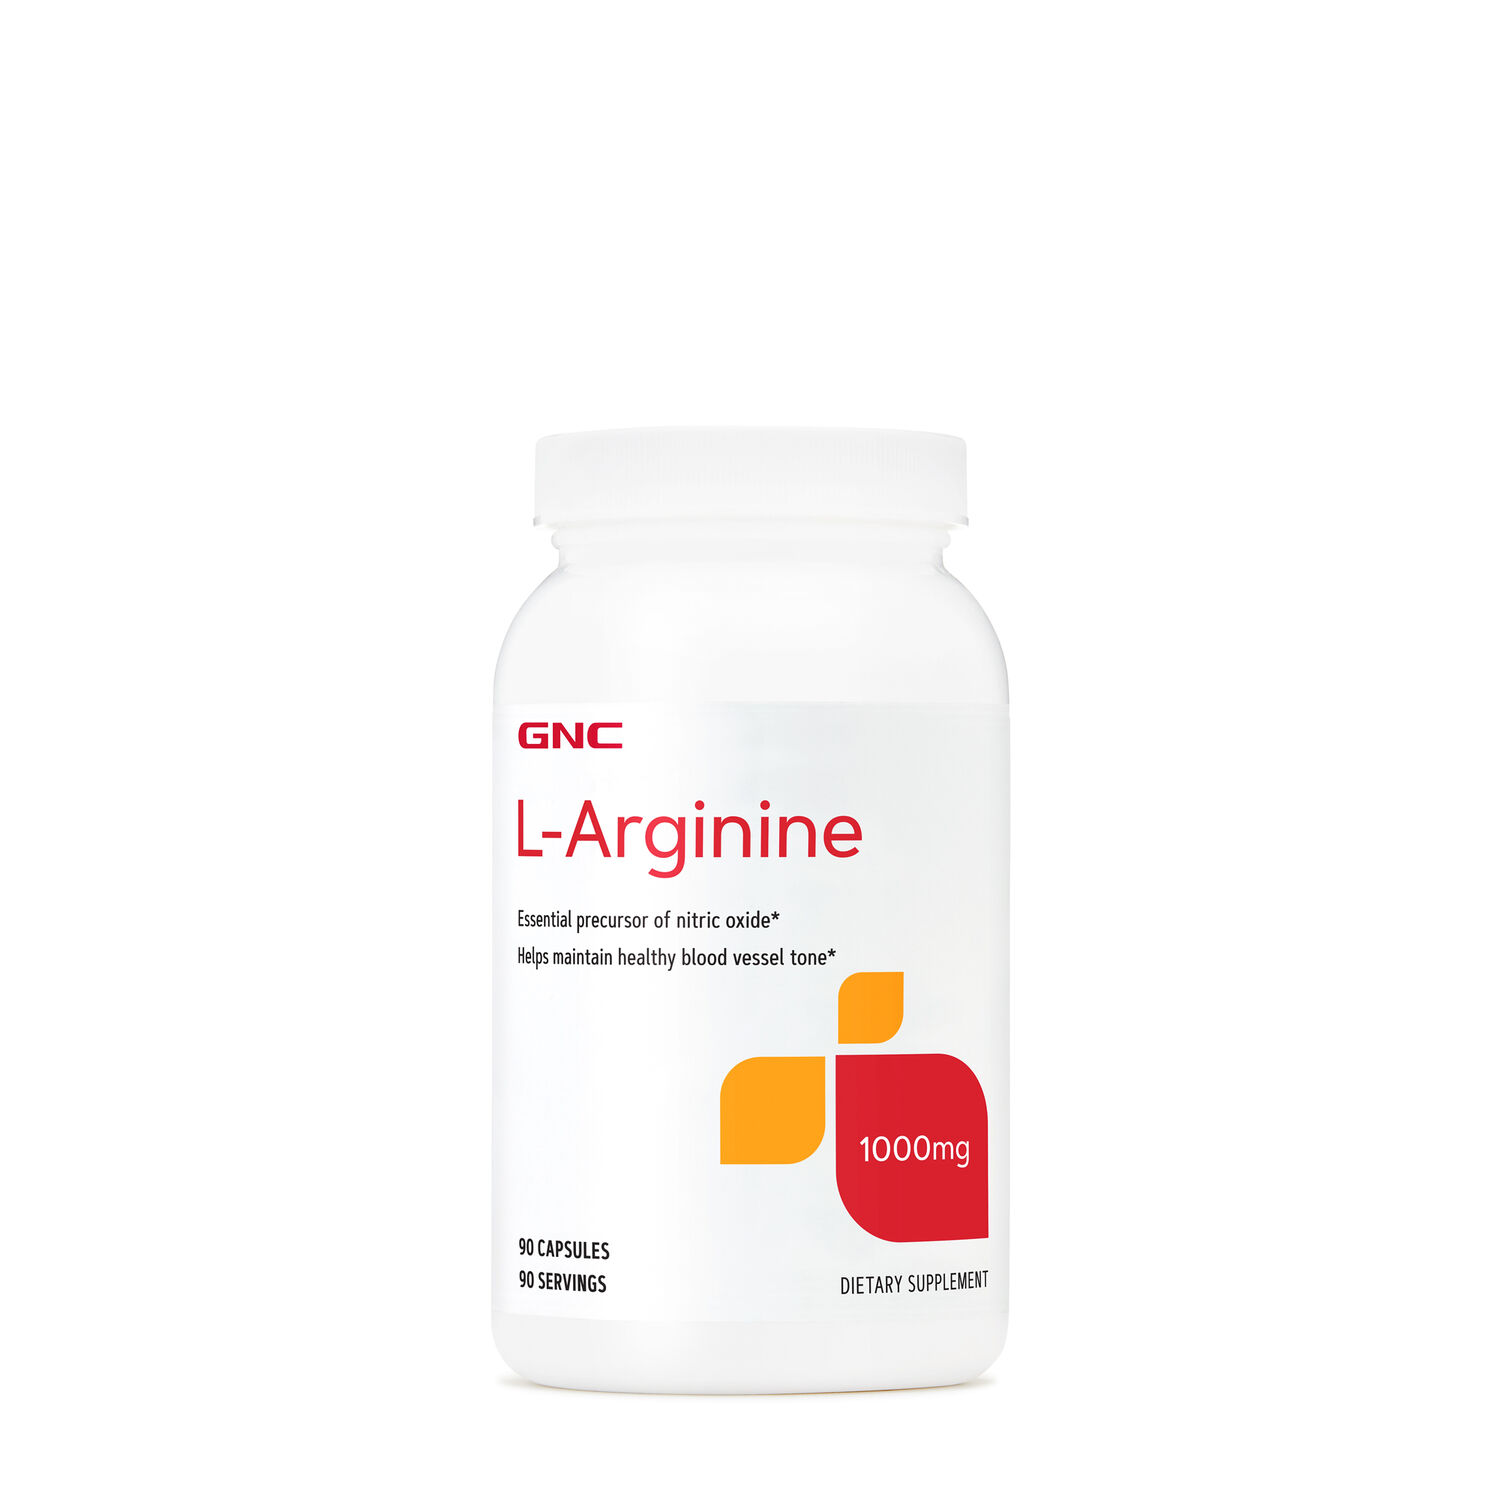 GNC L-Arginine Supplement Facts Front